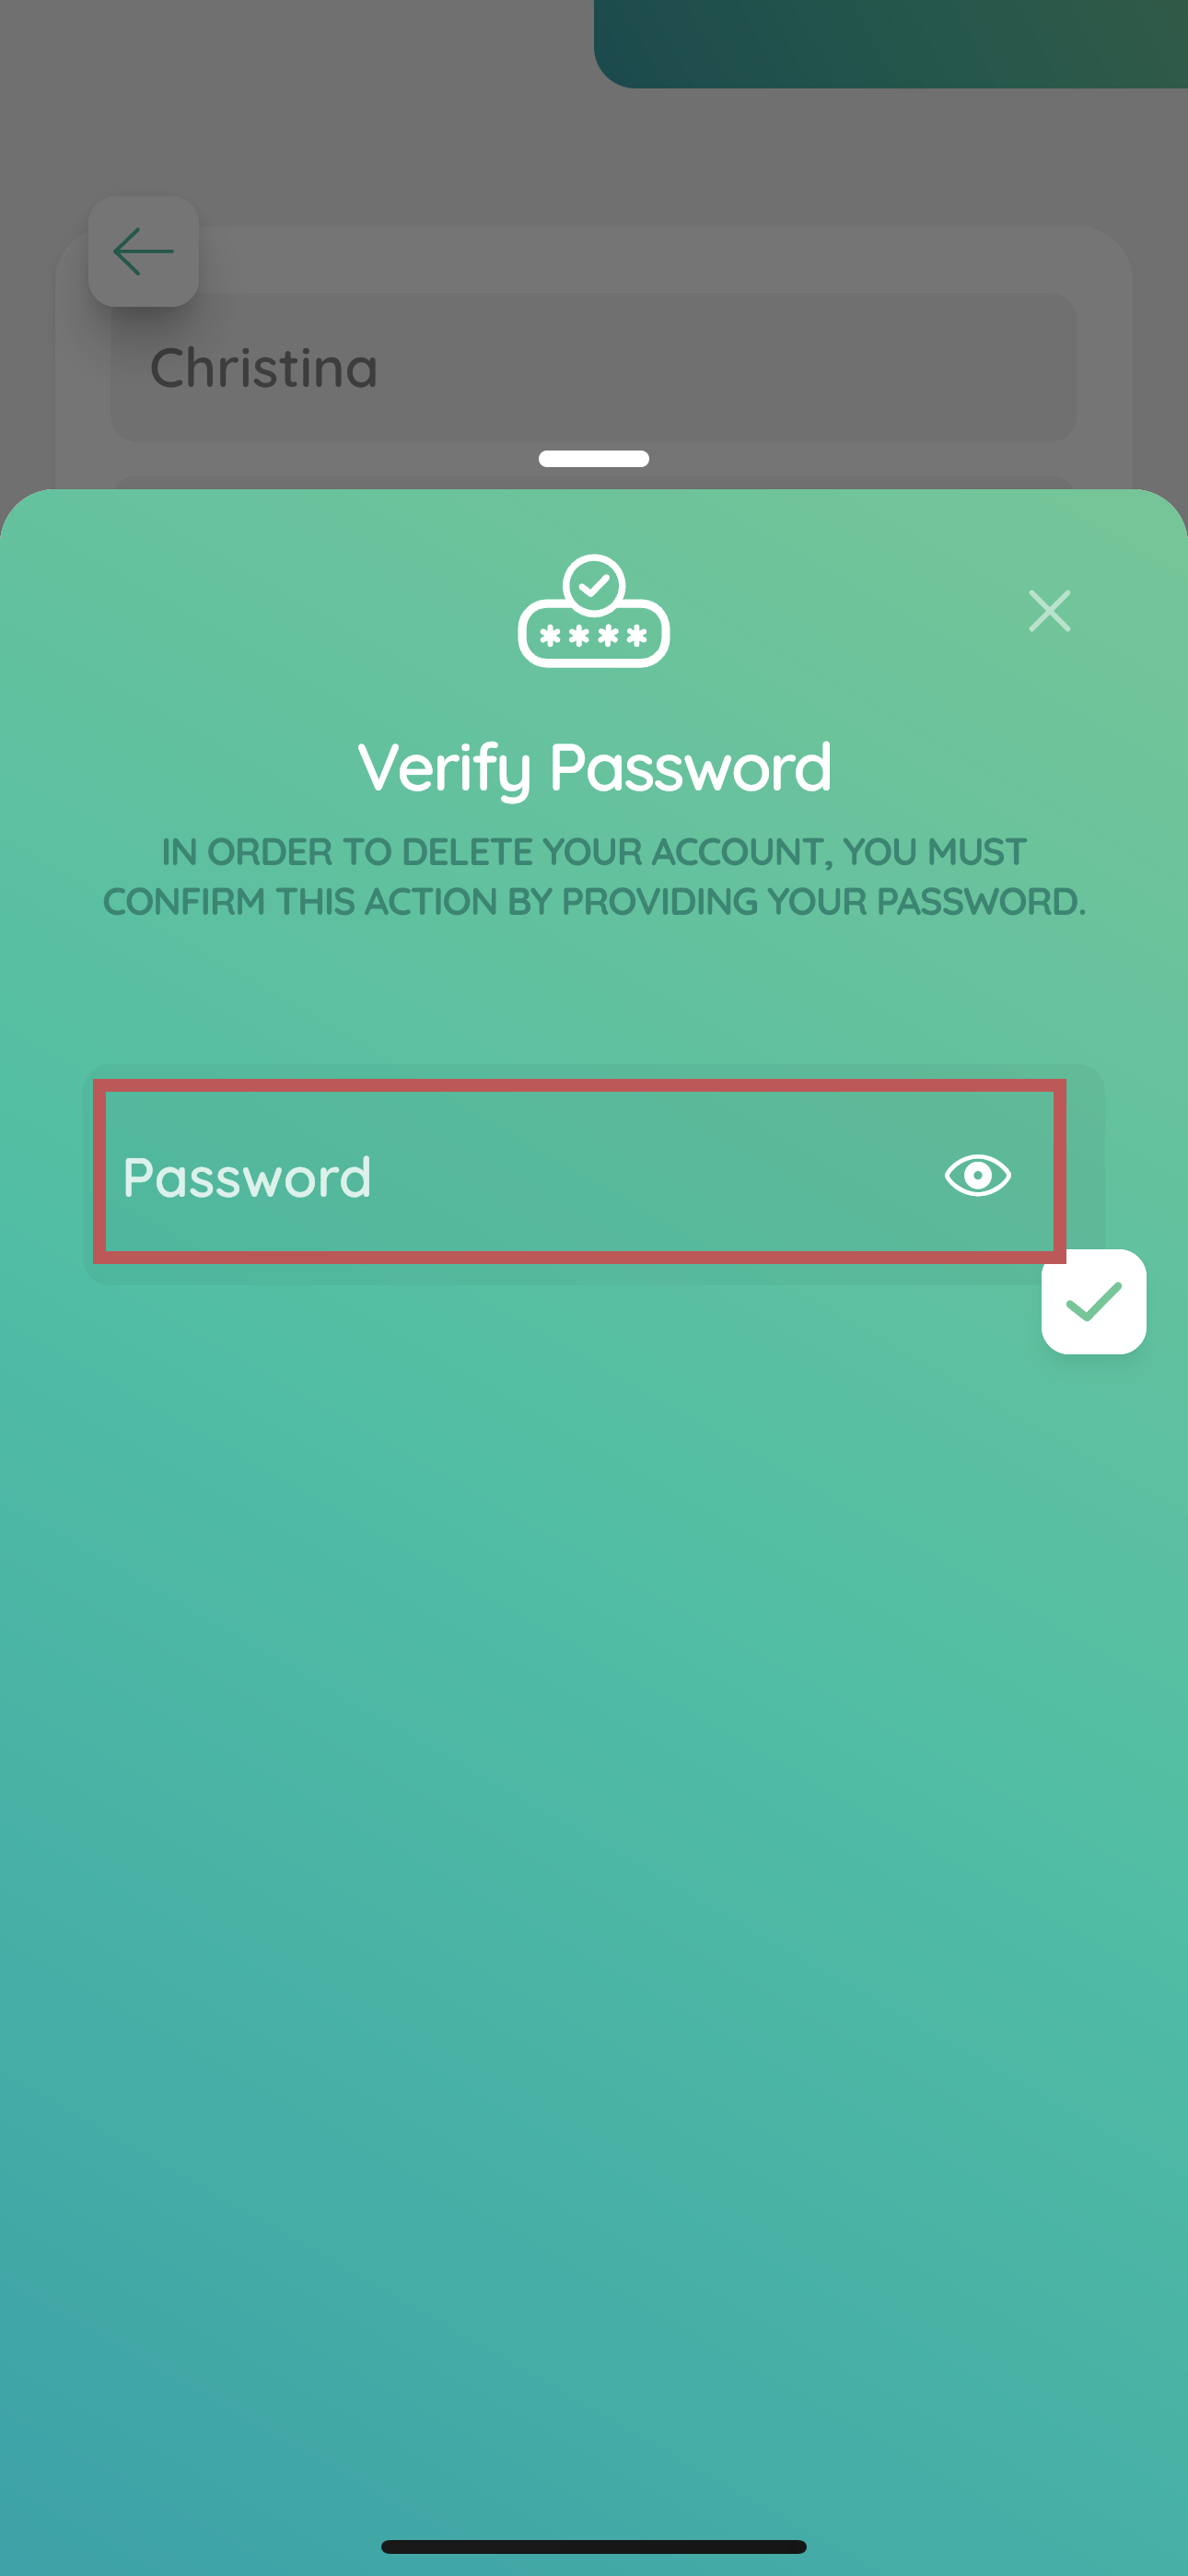 Step four: Enter you password